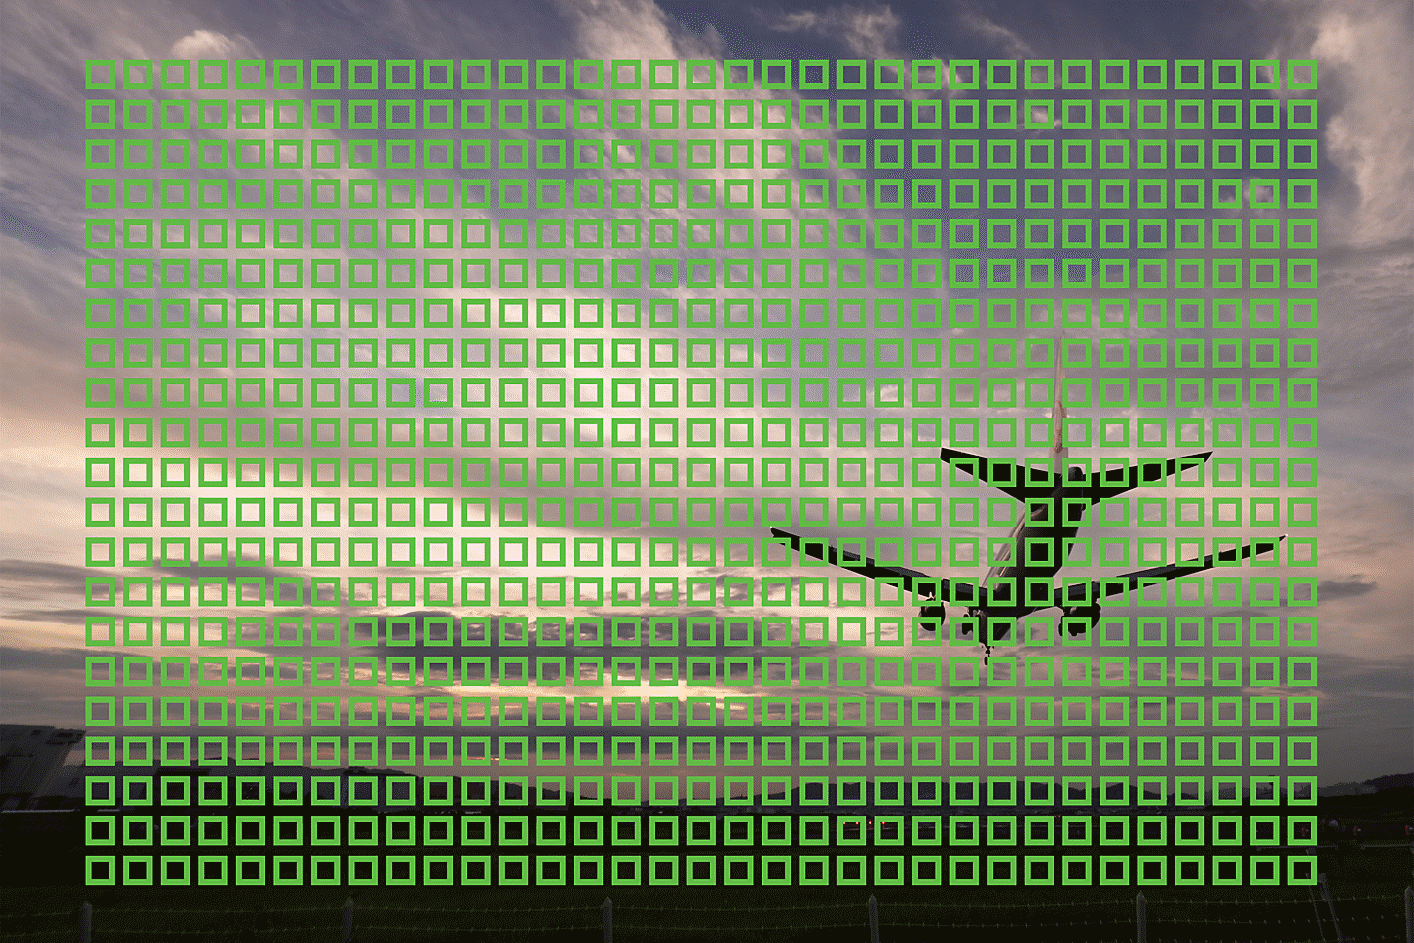 ภาพตัวอย่างของเครื่องบินกำลังบินที่มีสี่เหลี่ยมจัตุรัสขนาดเล็กแสดงจุด AF 693 จุดทั่วทั้งภาพ